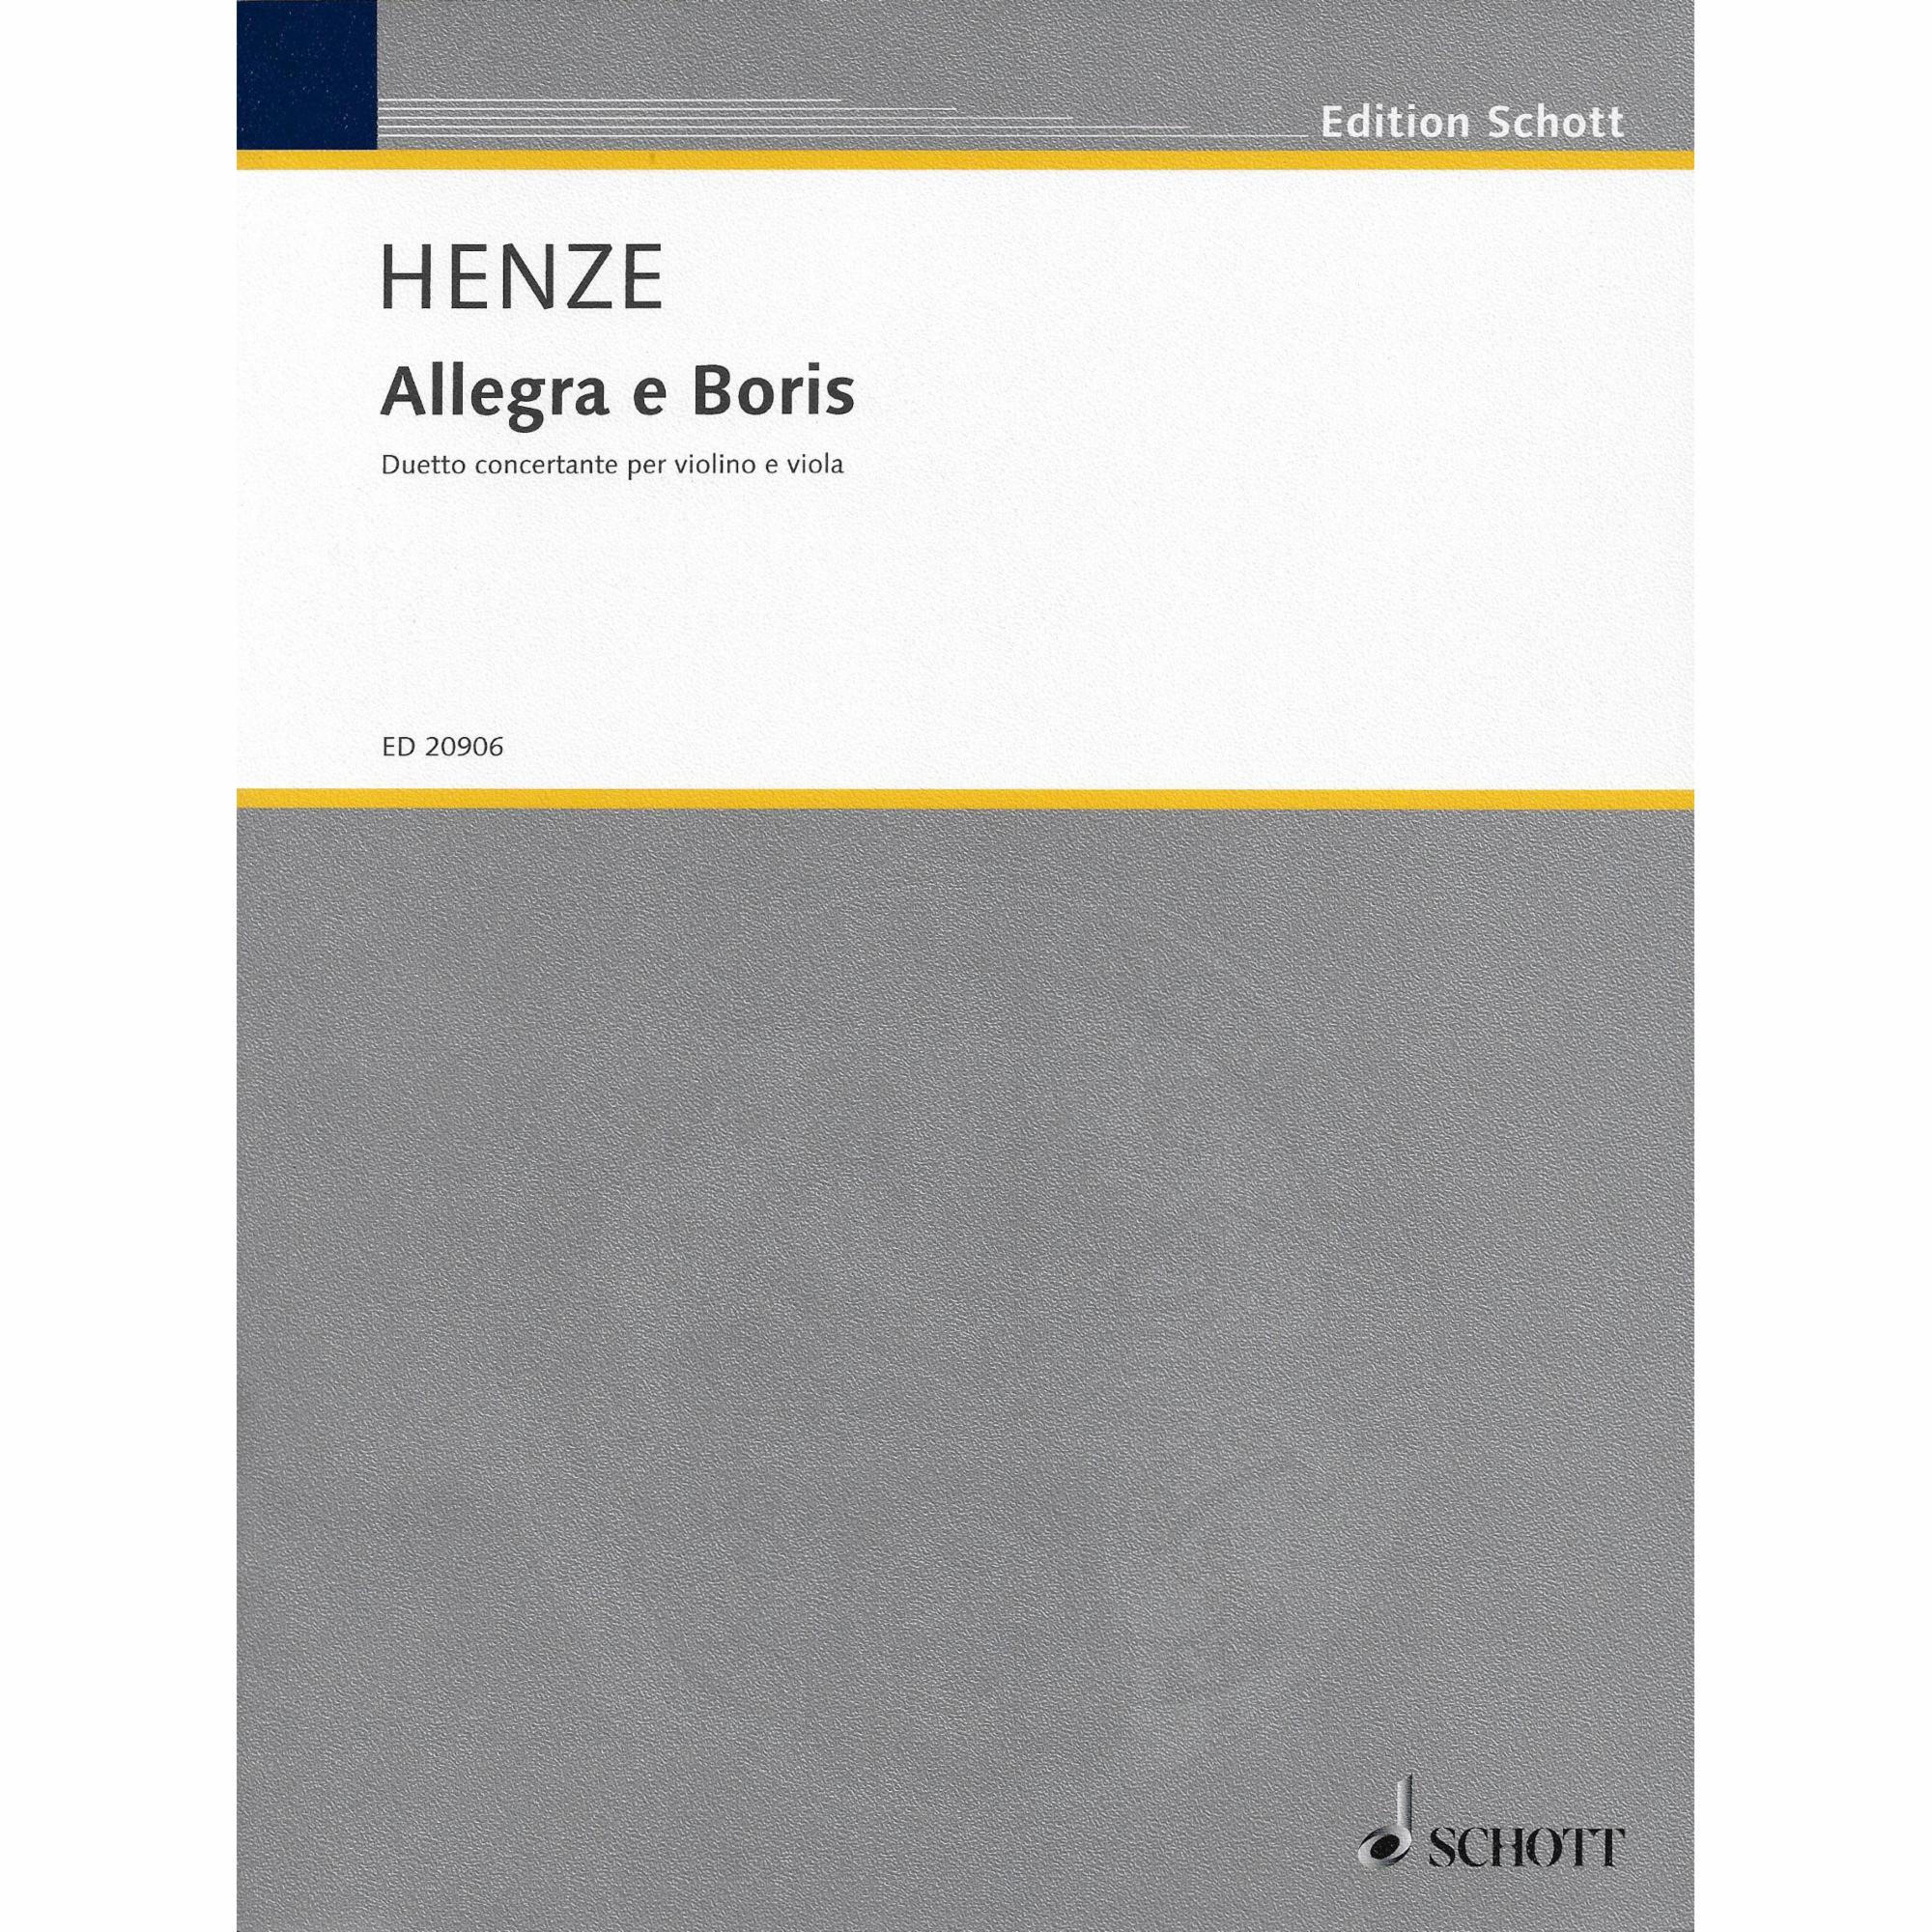 Henze -- Allegra e Boris for Violin and Viola